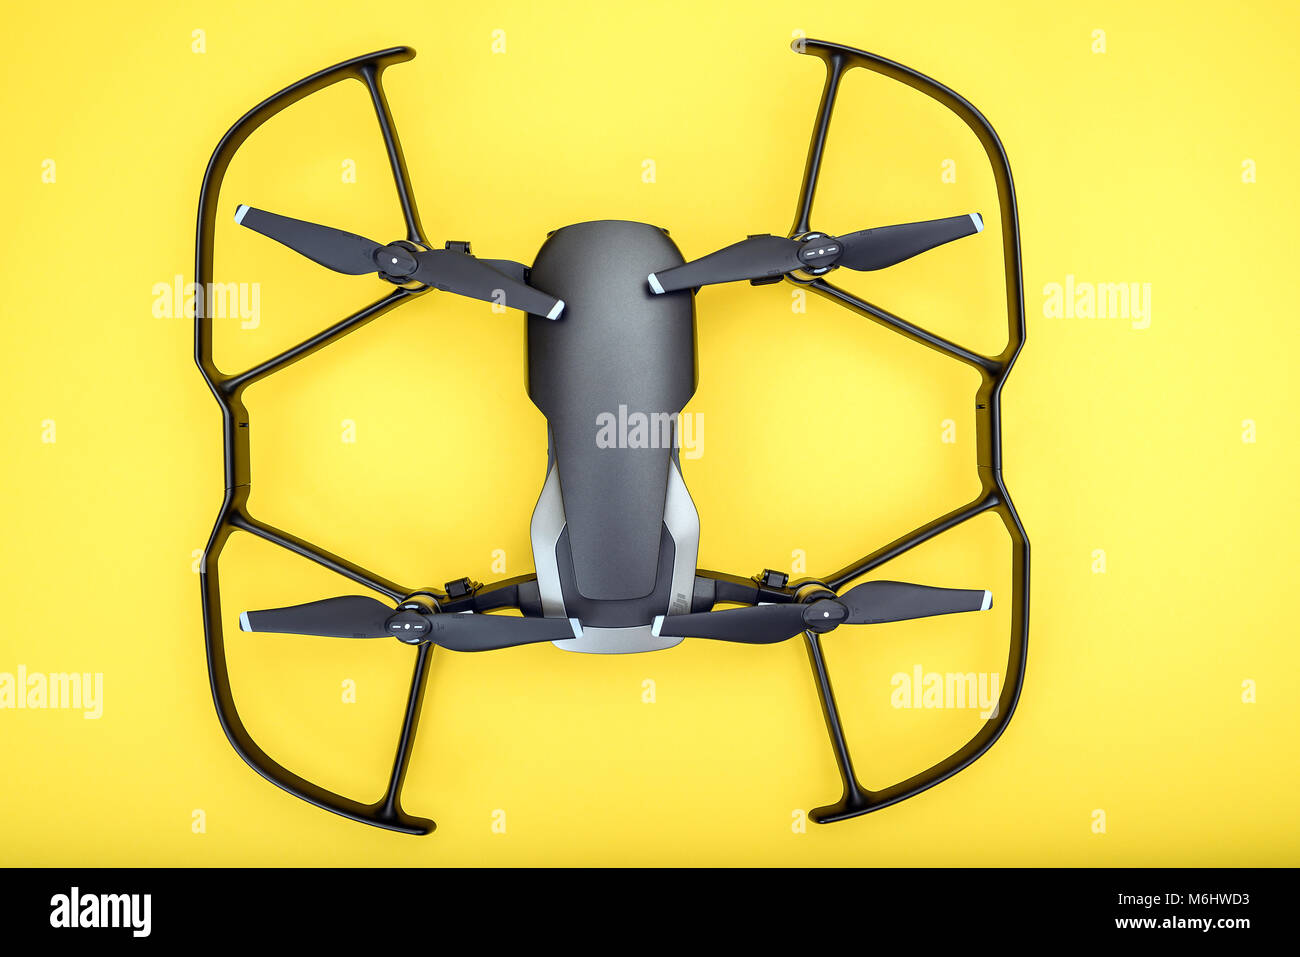 KAUNAS, Litauen - 03. MÄRZ 2018: DJI Mavic Luft drone mit Propeller wachen, auf gelbem Hintergrund Stockfoto